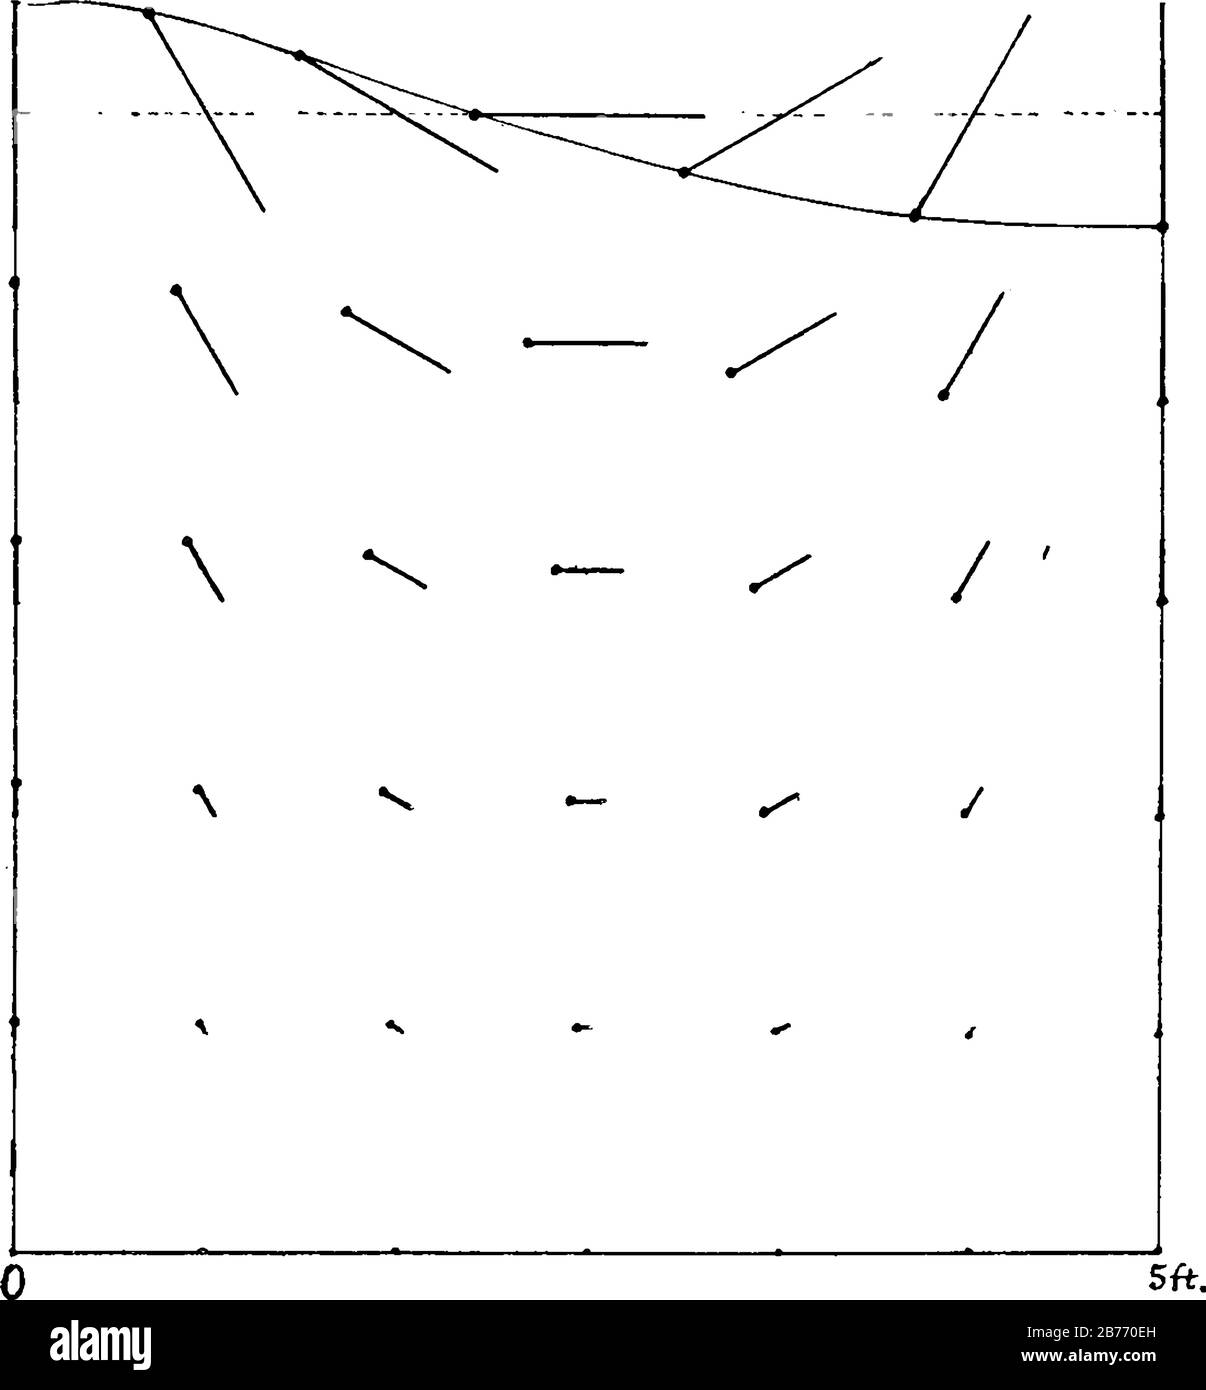 Die Bewegung jedes Teilchens ist gleichlinear, die Pfade sind vertikal, wo sich die Multiplikate von 180 Grad und horizontal an den Punkten auf halber Strecke zwischen Vintage l Stock Vektor